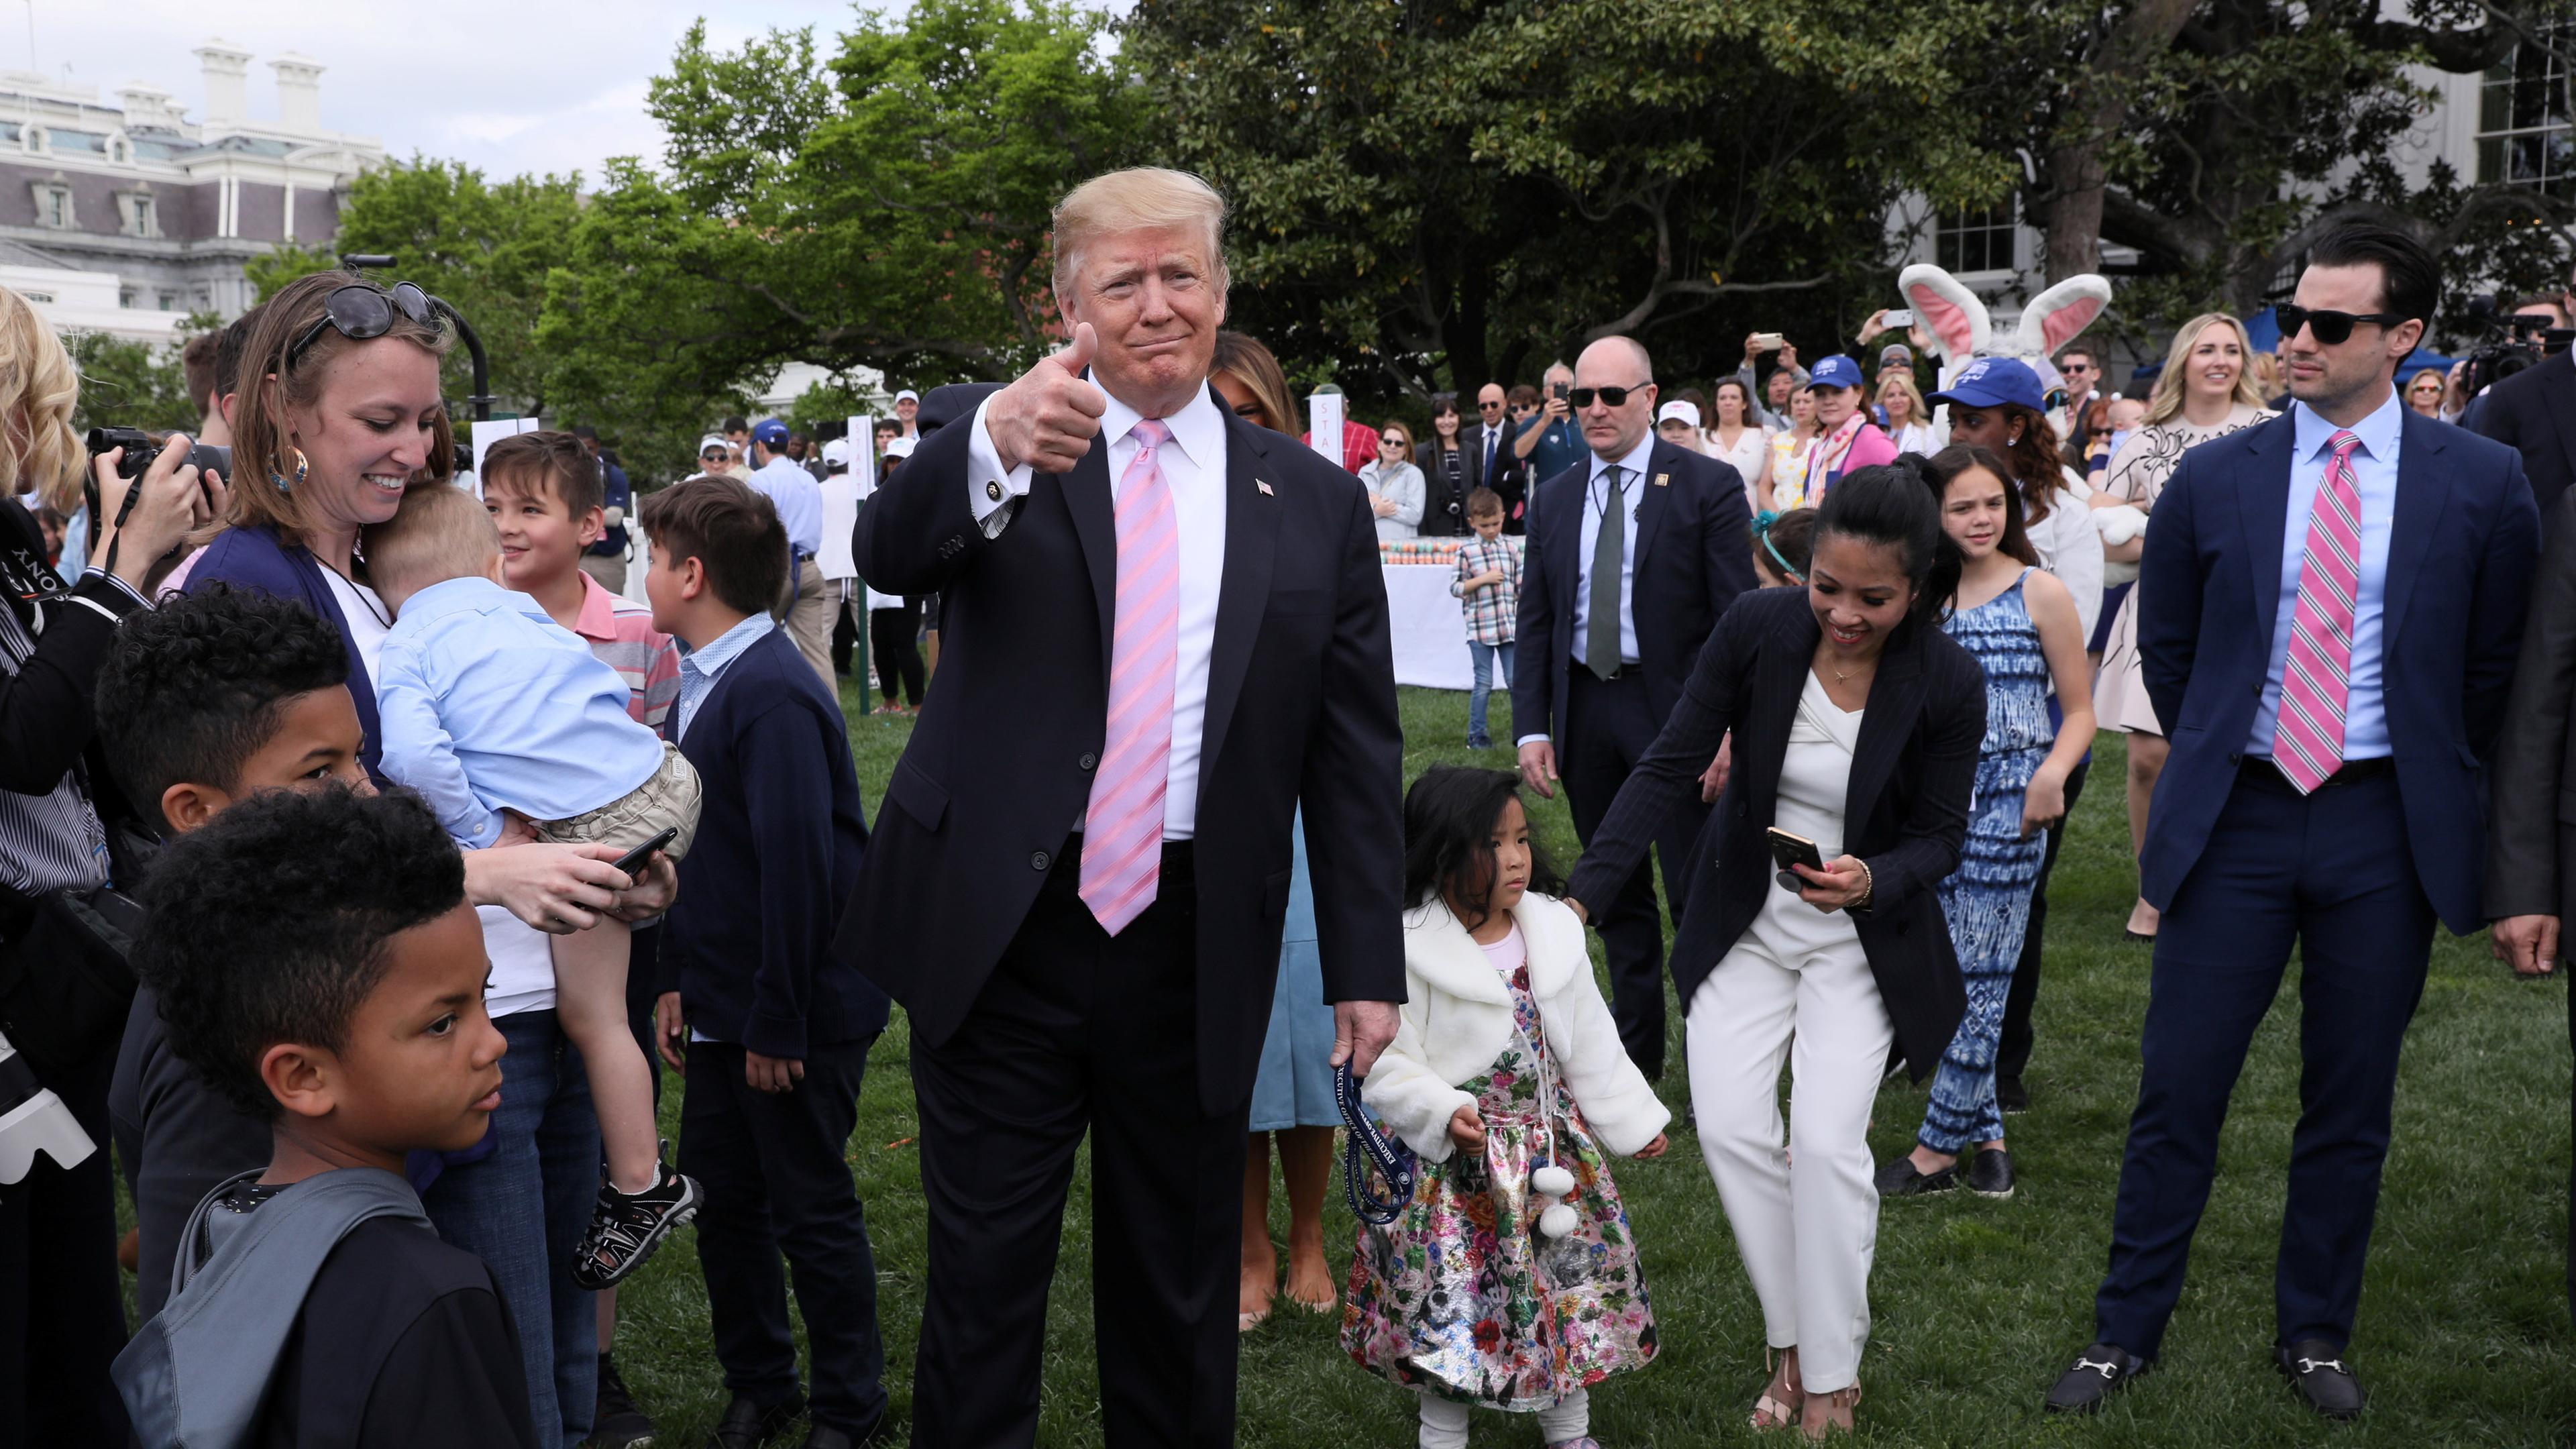 Trump zeigt ein "Daumen hoch" in die Menge in Washington am 22.04.2019